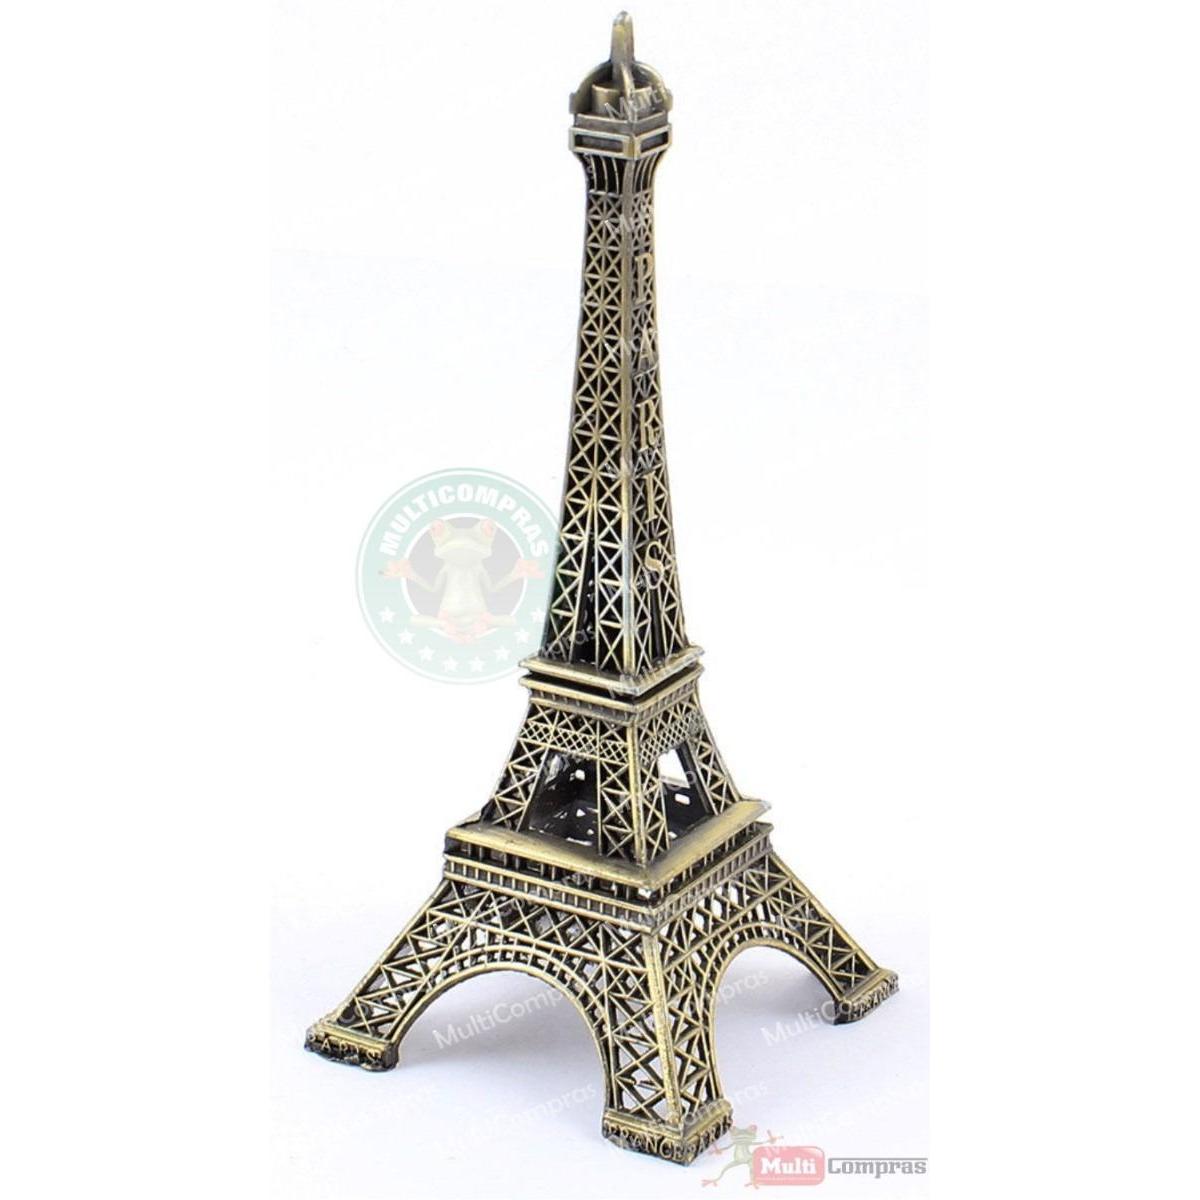  Si buscas Replica Torre Eiffel Metal 40cm Decoración Adorno Regalo puedes comprarlo con MULTI COMPRAS está en venta al mejor precio